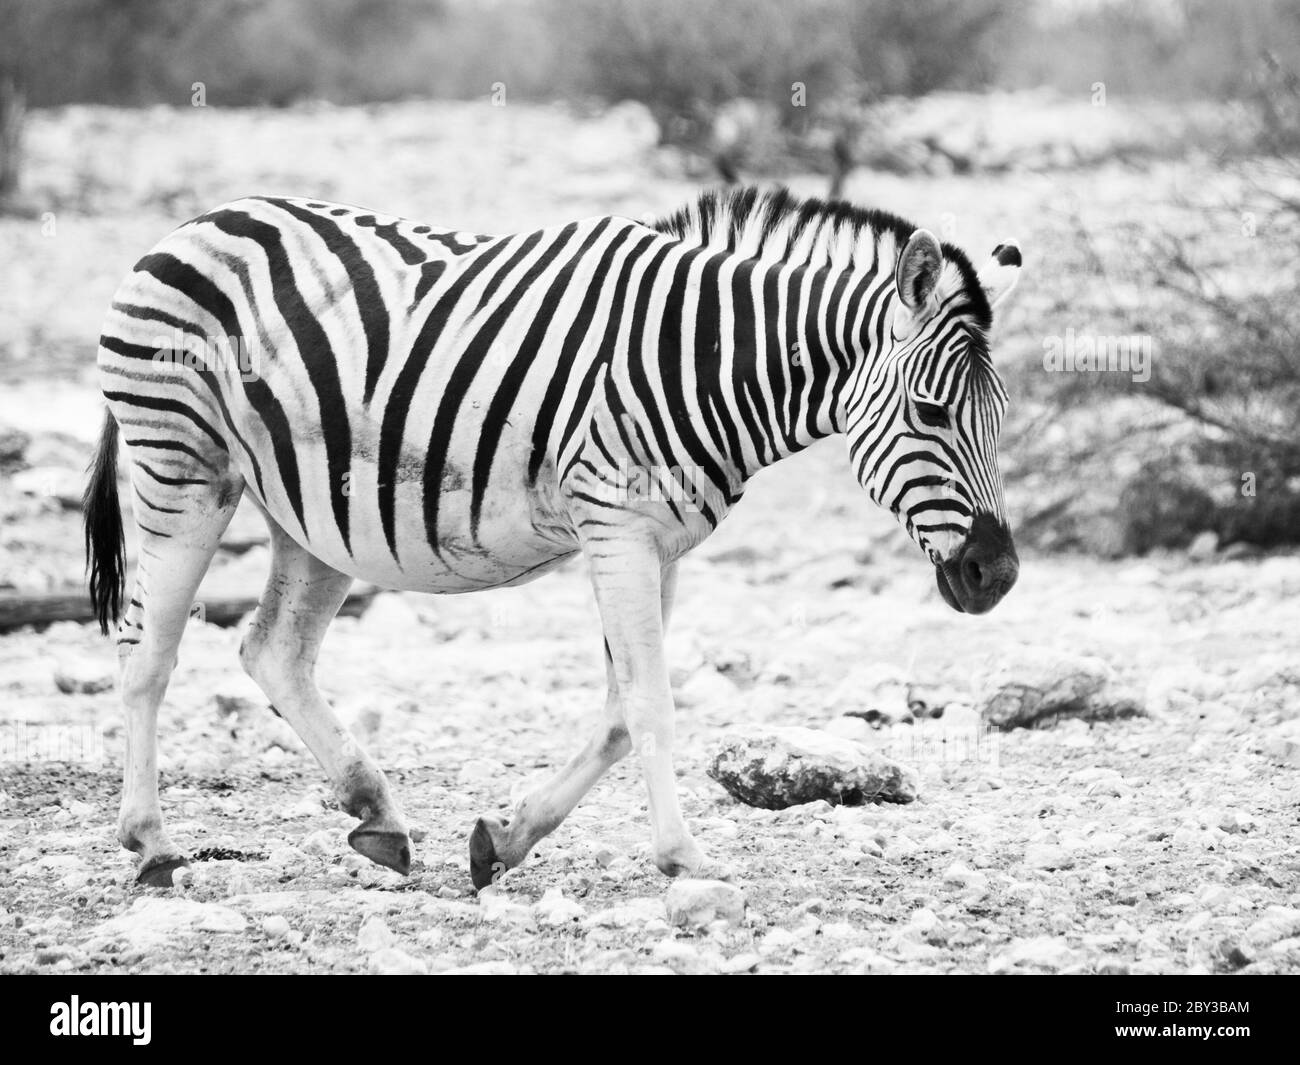 Le zébré Lonesome marche sur une terre sèche et semble très triste. Image en blanc et en noir et blanc. Banque D'Images